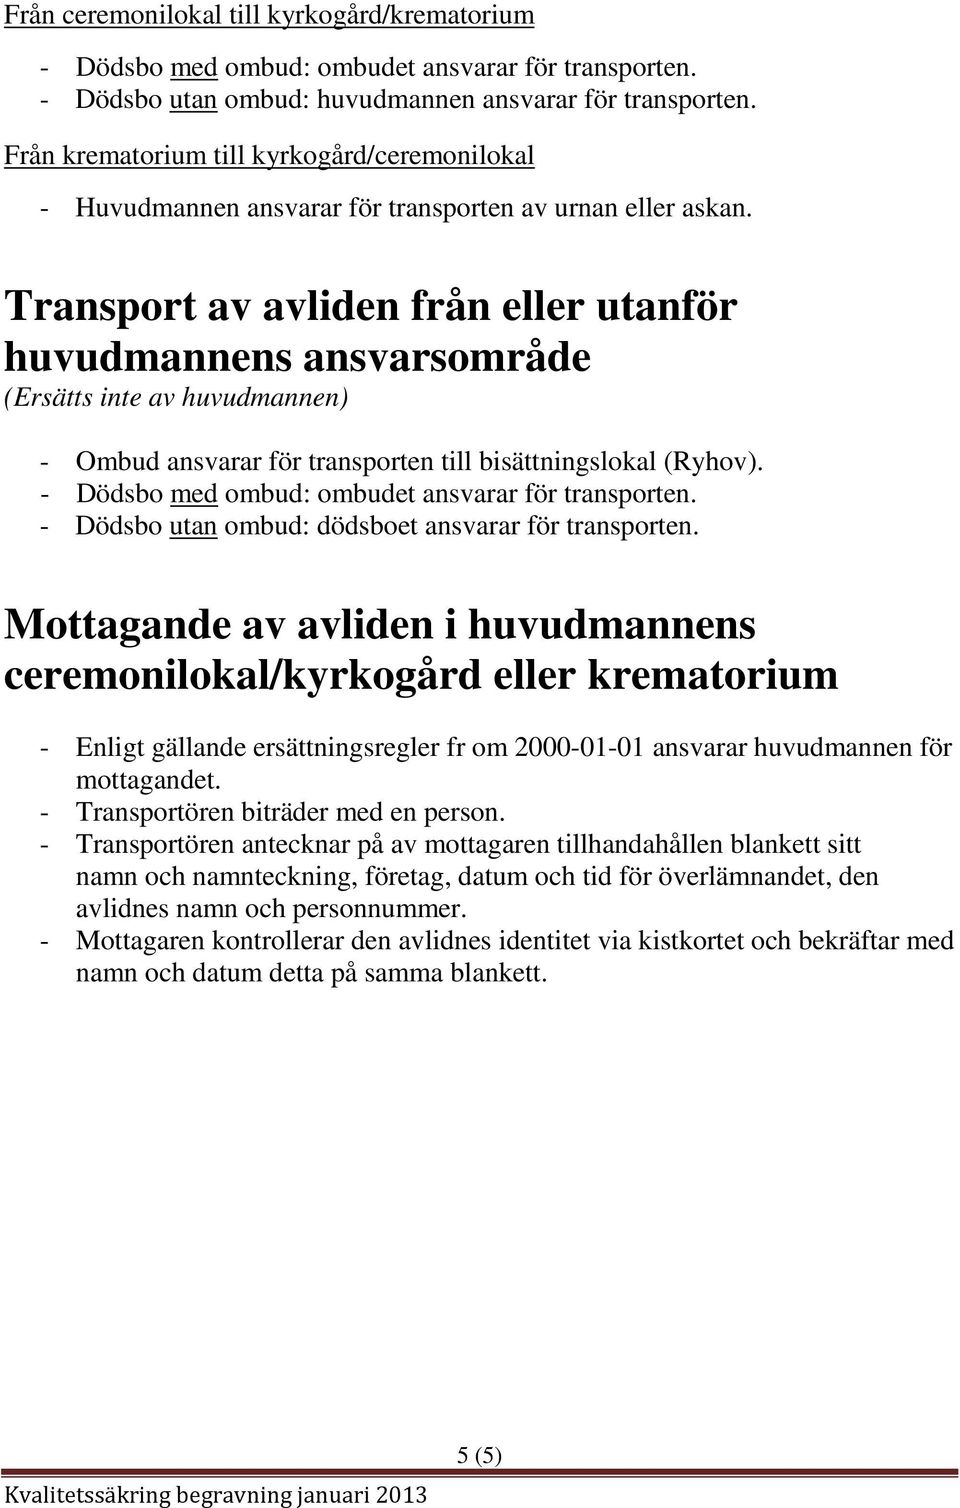 Transport av avliden från eller utanför huvudmannens ansvarsområde (Ersätts inte av huvudmannen) - Ombud ansvarar för transporten till bisättningslokal (Ryhov).